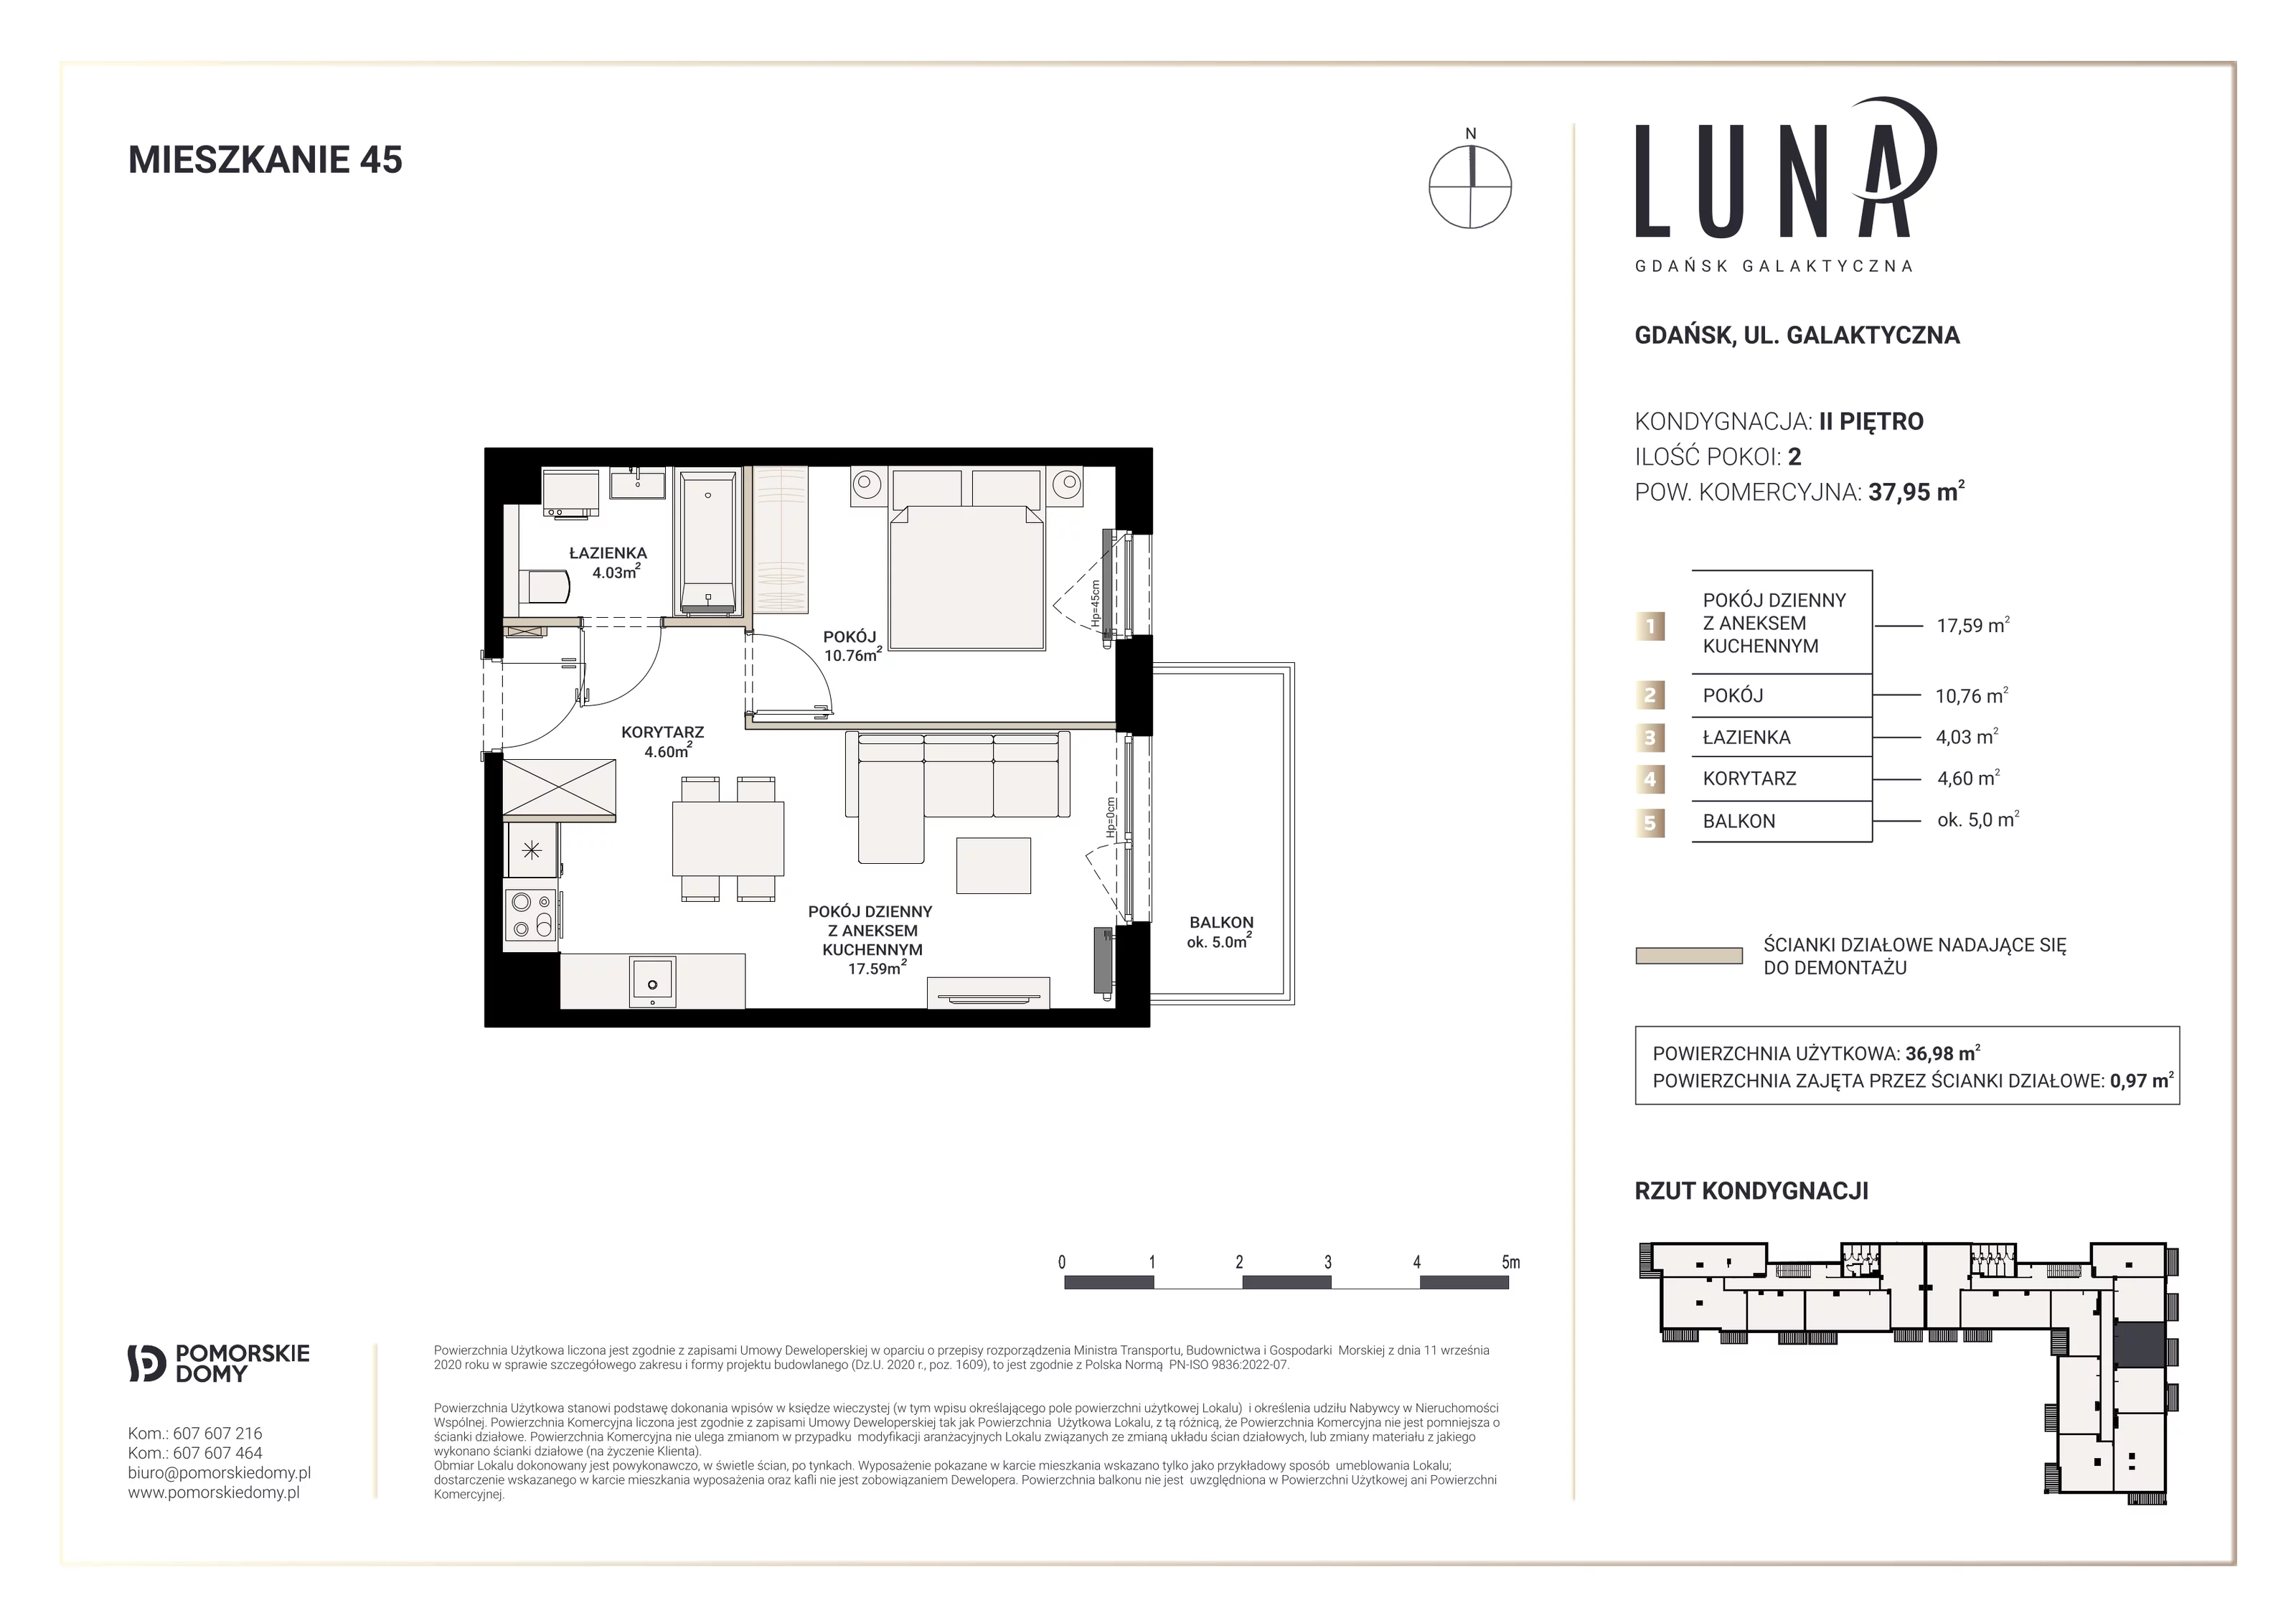 Mieszkanie 36,98 m², piętro 2, oferta nr 45, Luna, Gdańsk, Osowa, ul. Galaktyczna/Homera